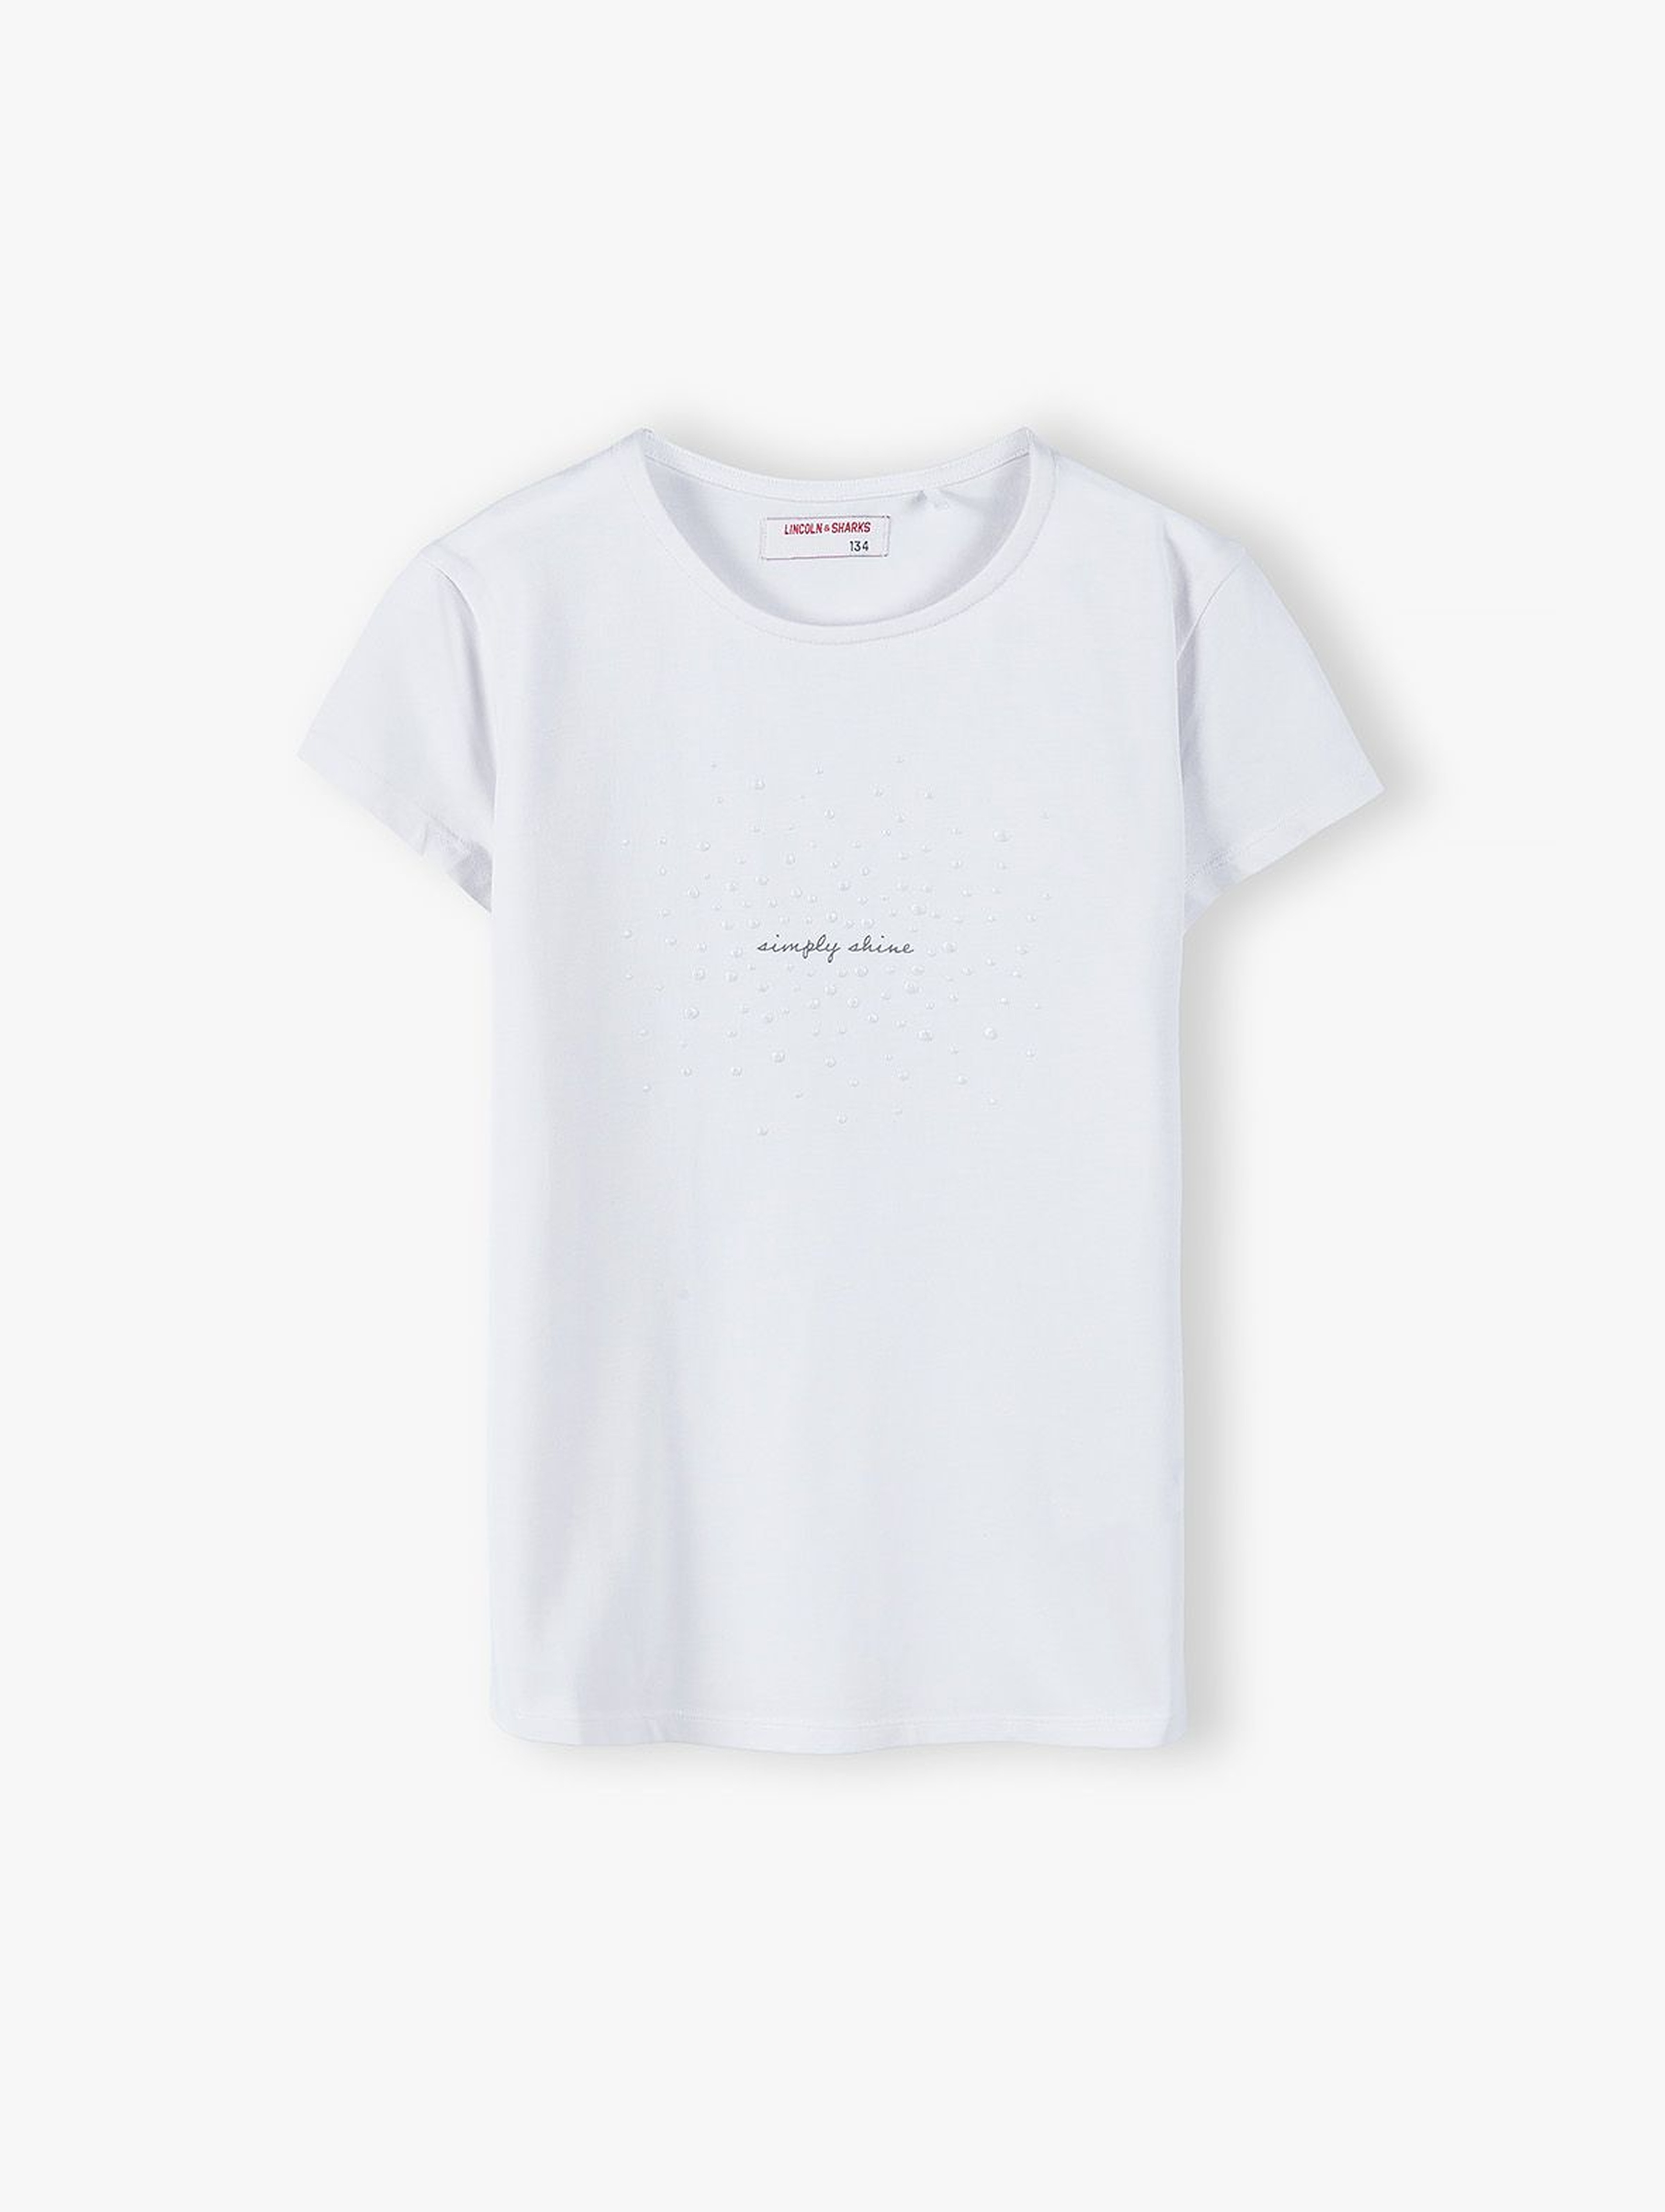 T- shirt dziewczęcy - biały